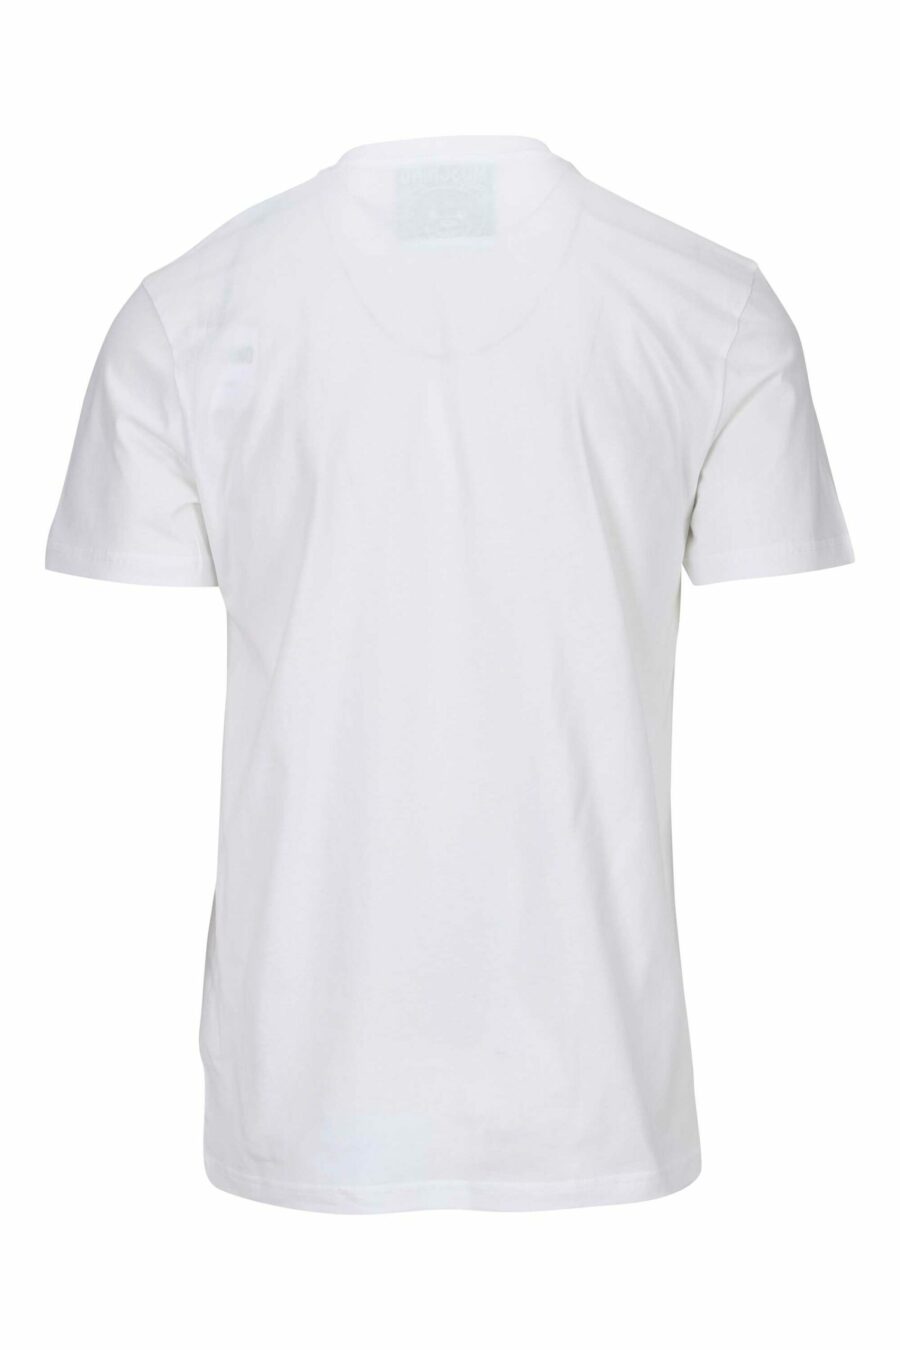 T-shirt blanc avec minilogue "teddy" brodé - 667113455334 1 à l'échelle